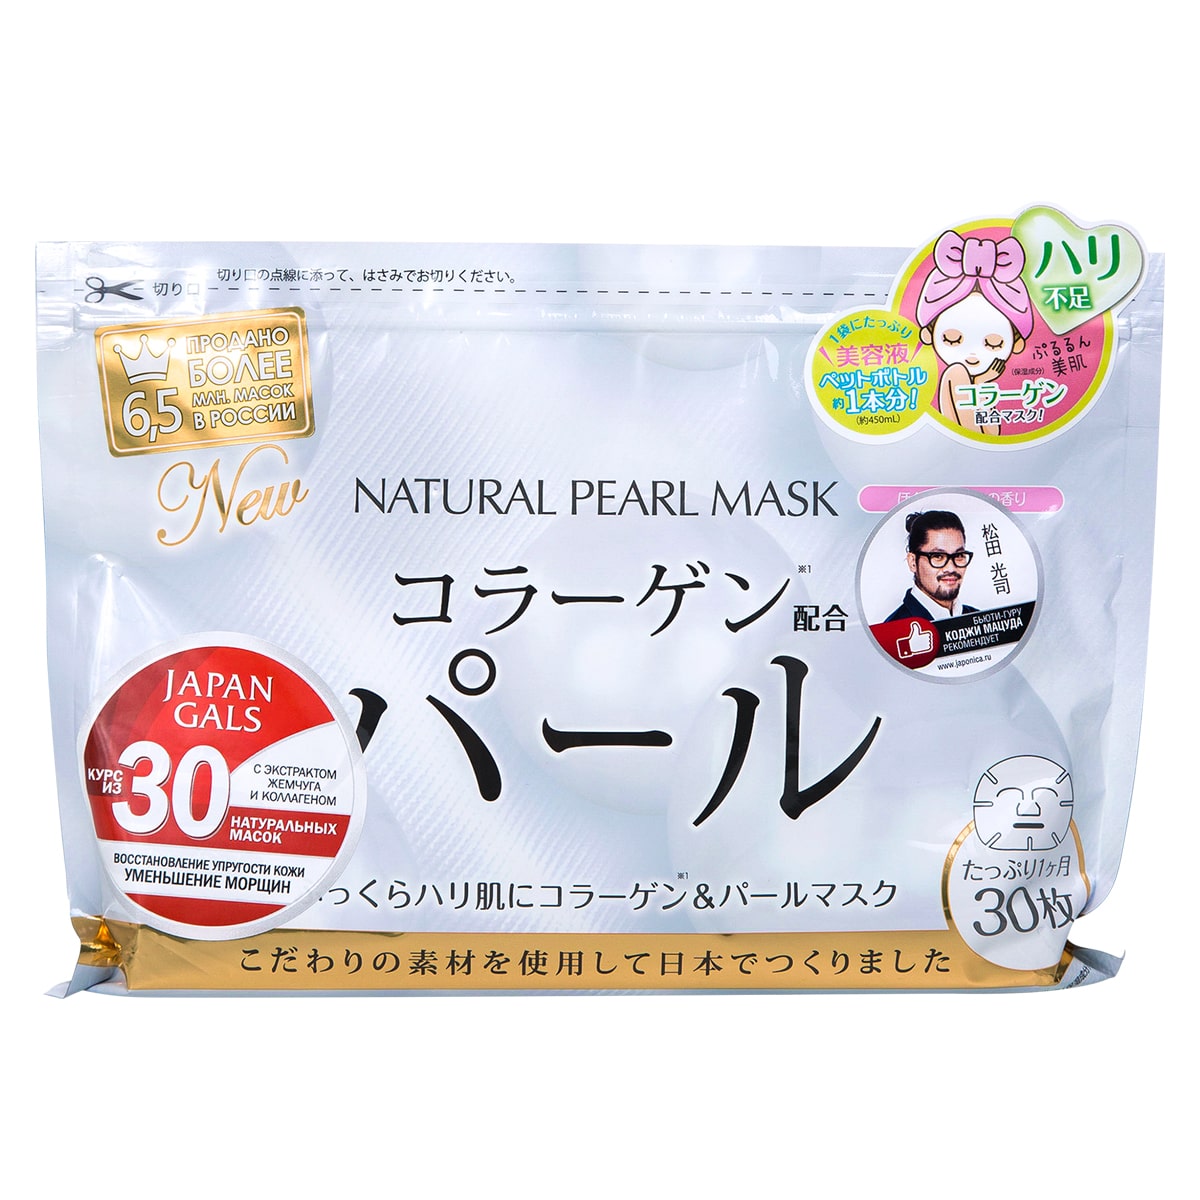 цена Japan Gals Курс натуральных масок для лица с экстрактом жемчуга, 30 шт (Japan Gals, )